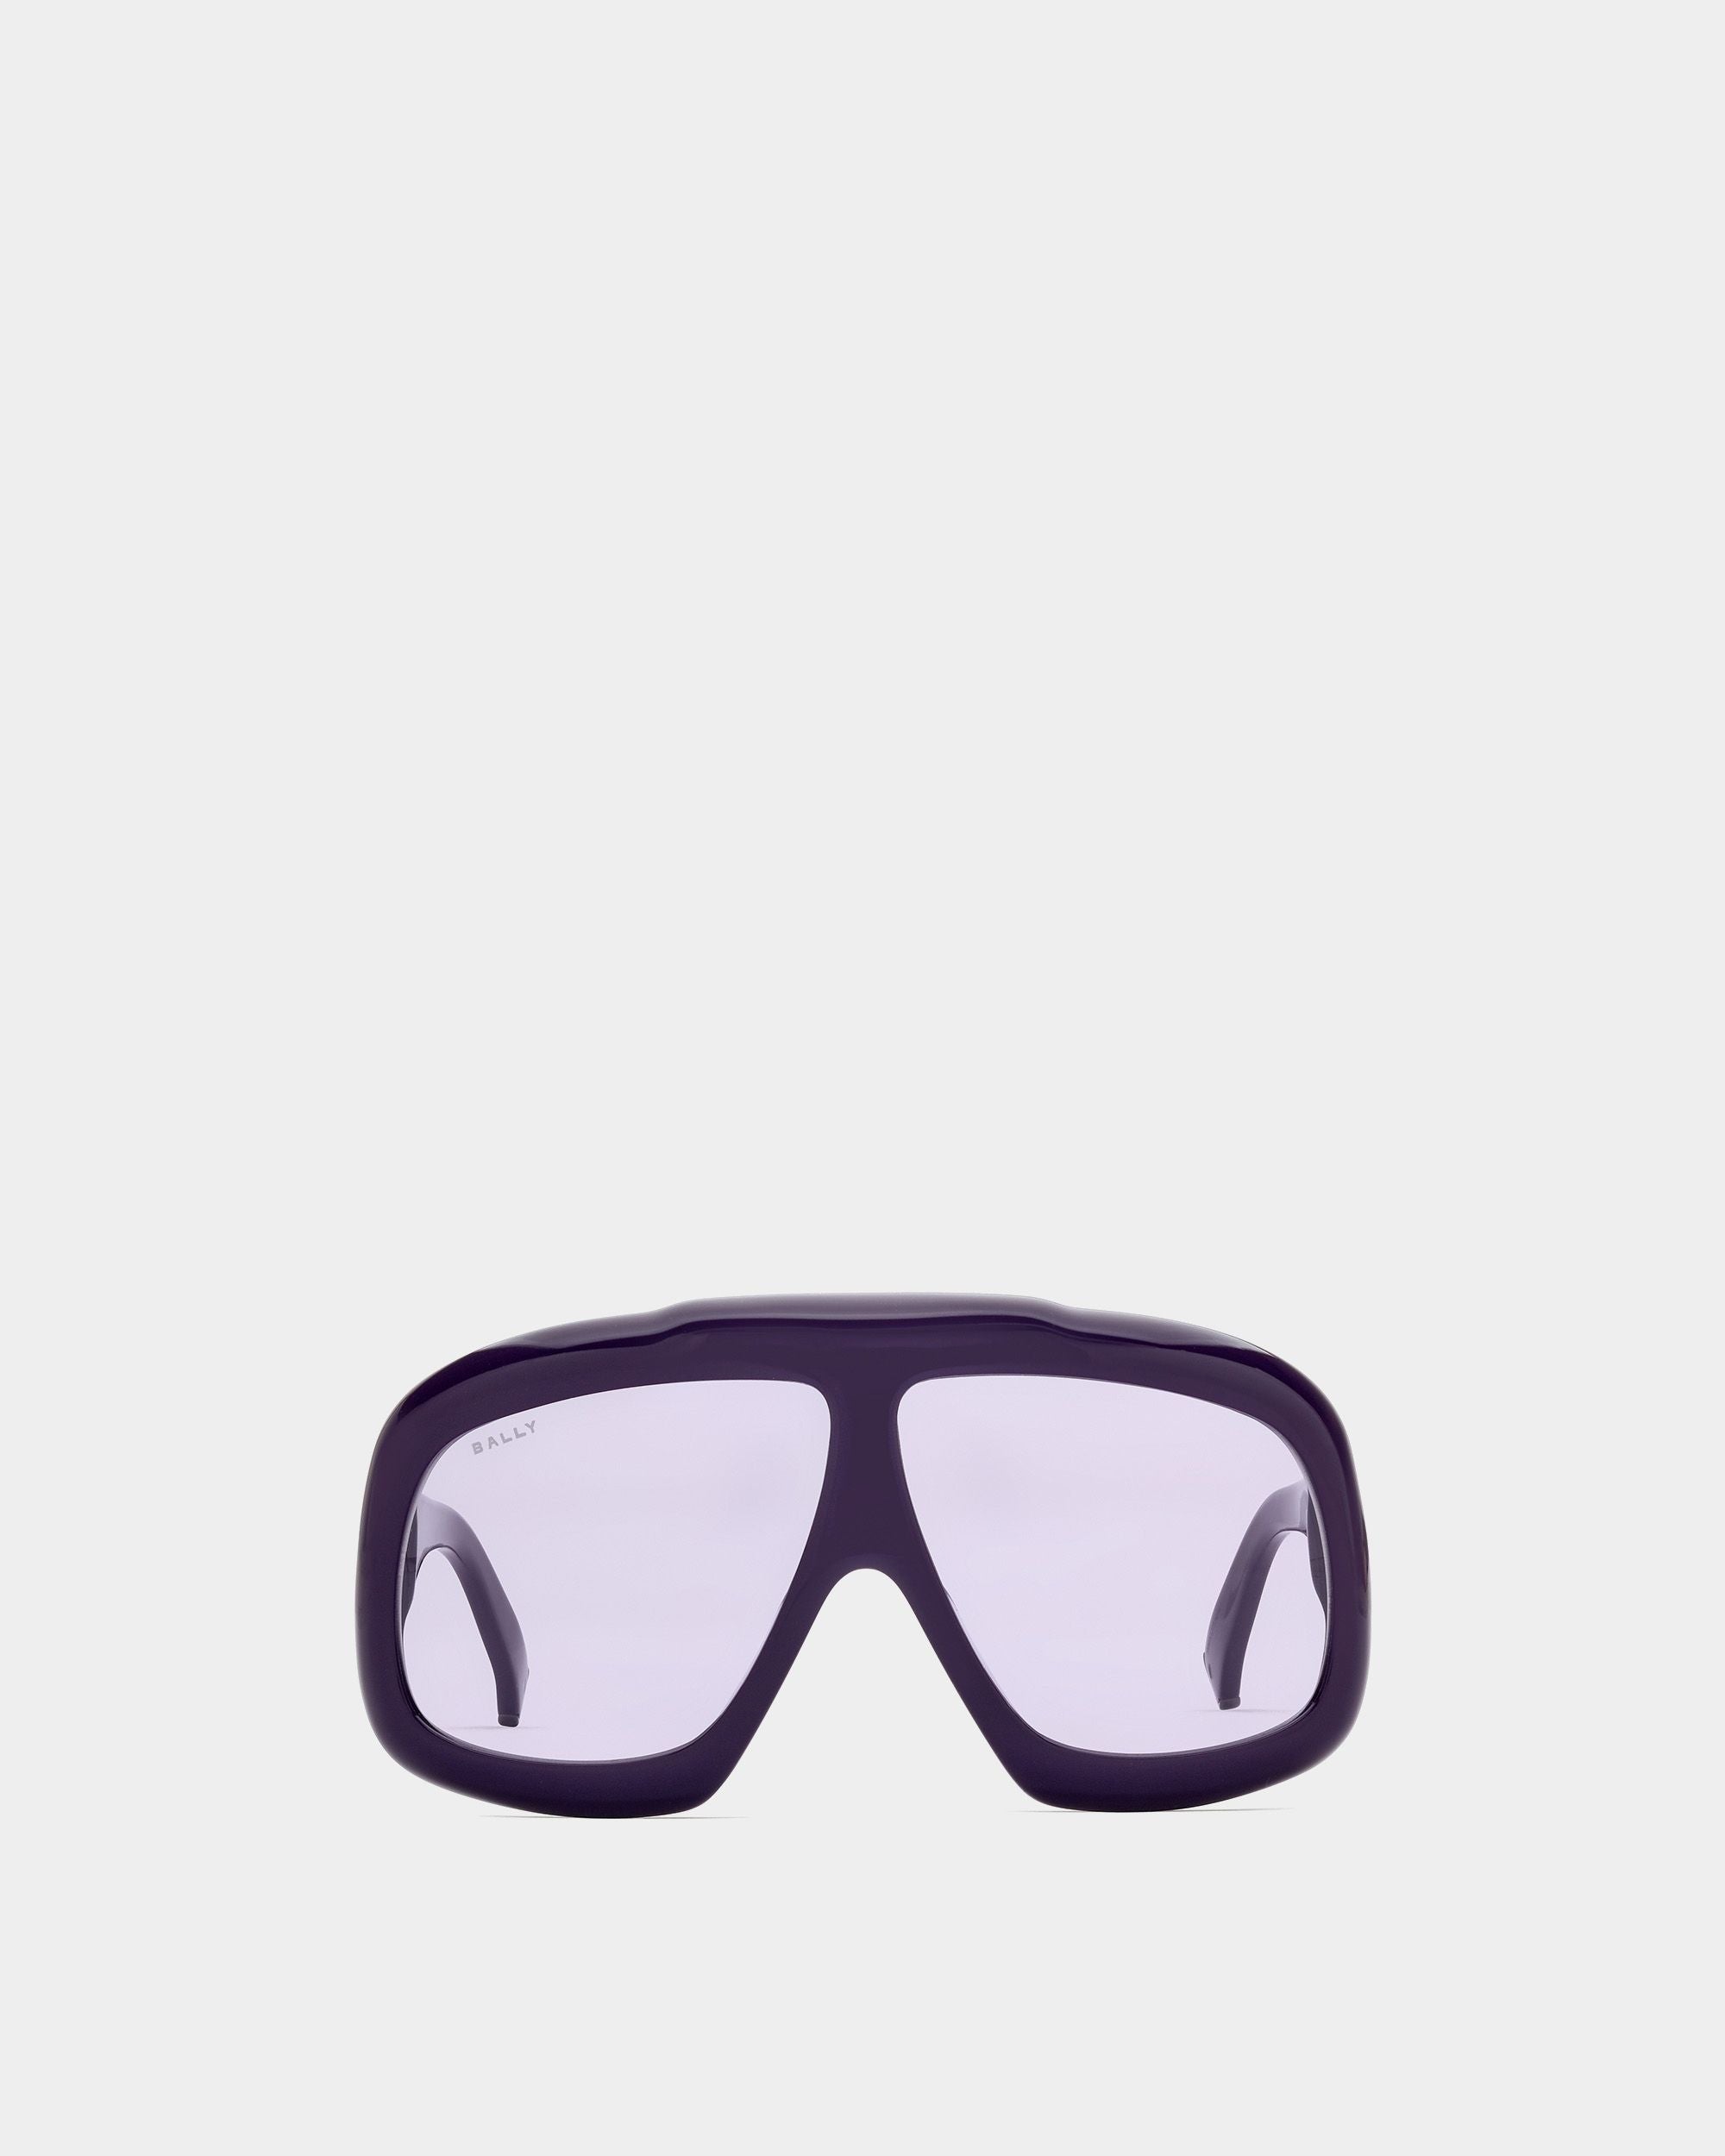 Eyger Sonnenbrille | Unisex-Accessoires | Lila Acetat mit fliederfarbenen Gläsern | Bally | Still Life Vorderseite